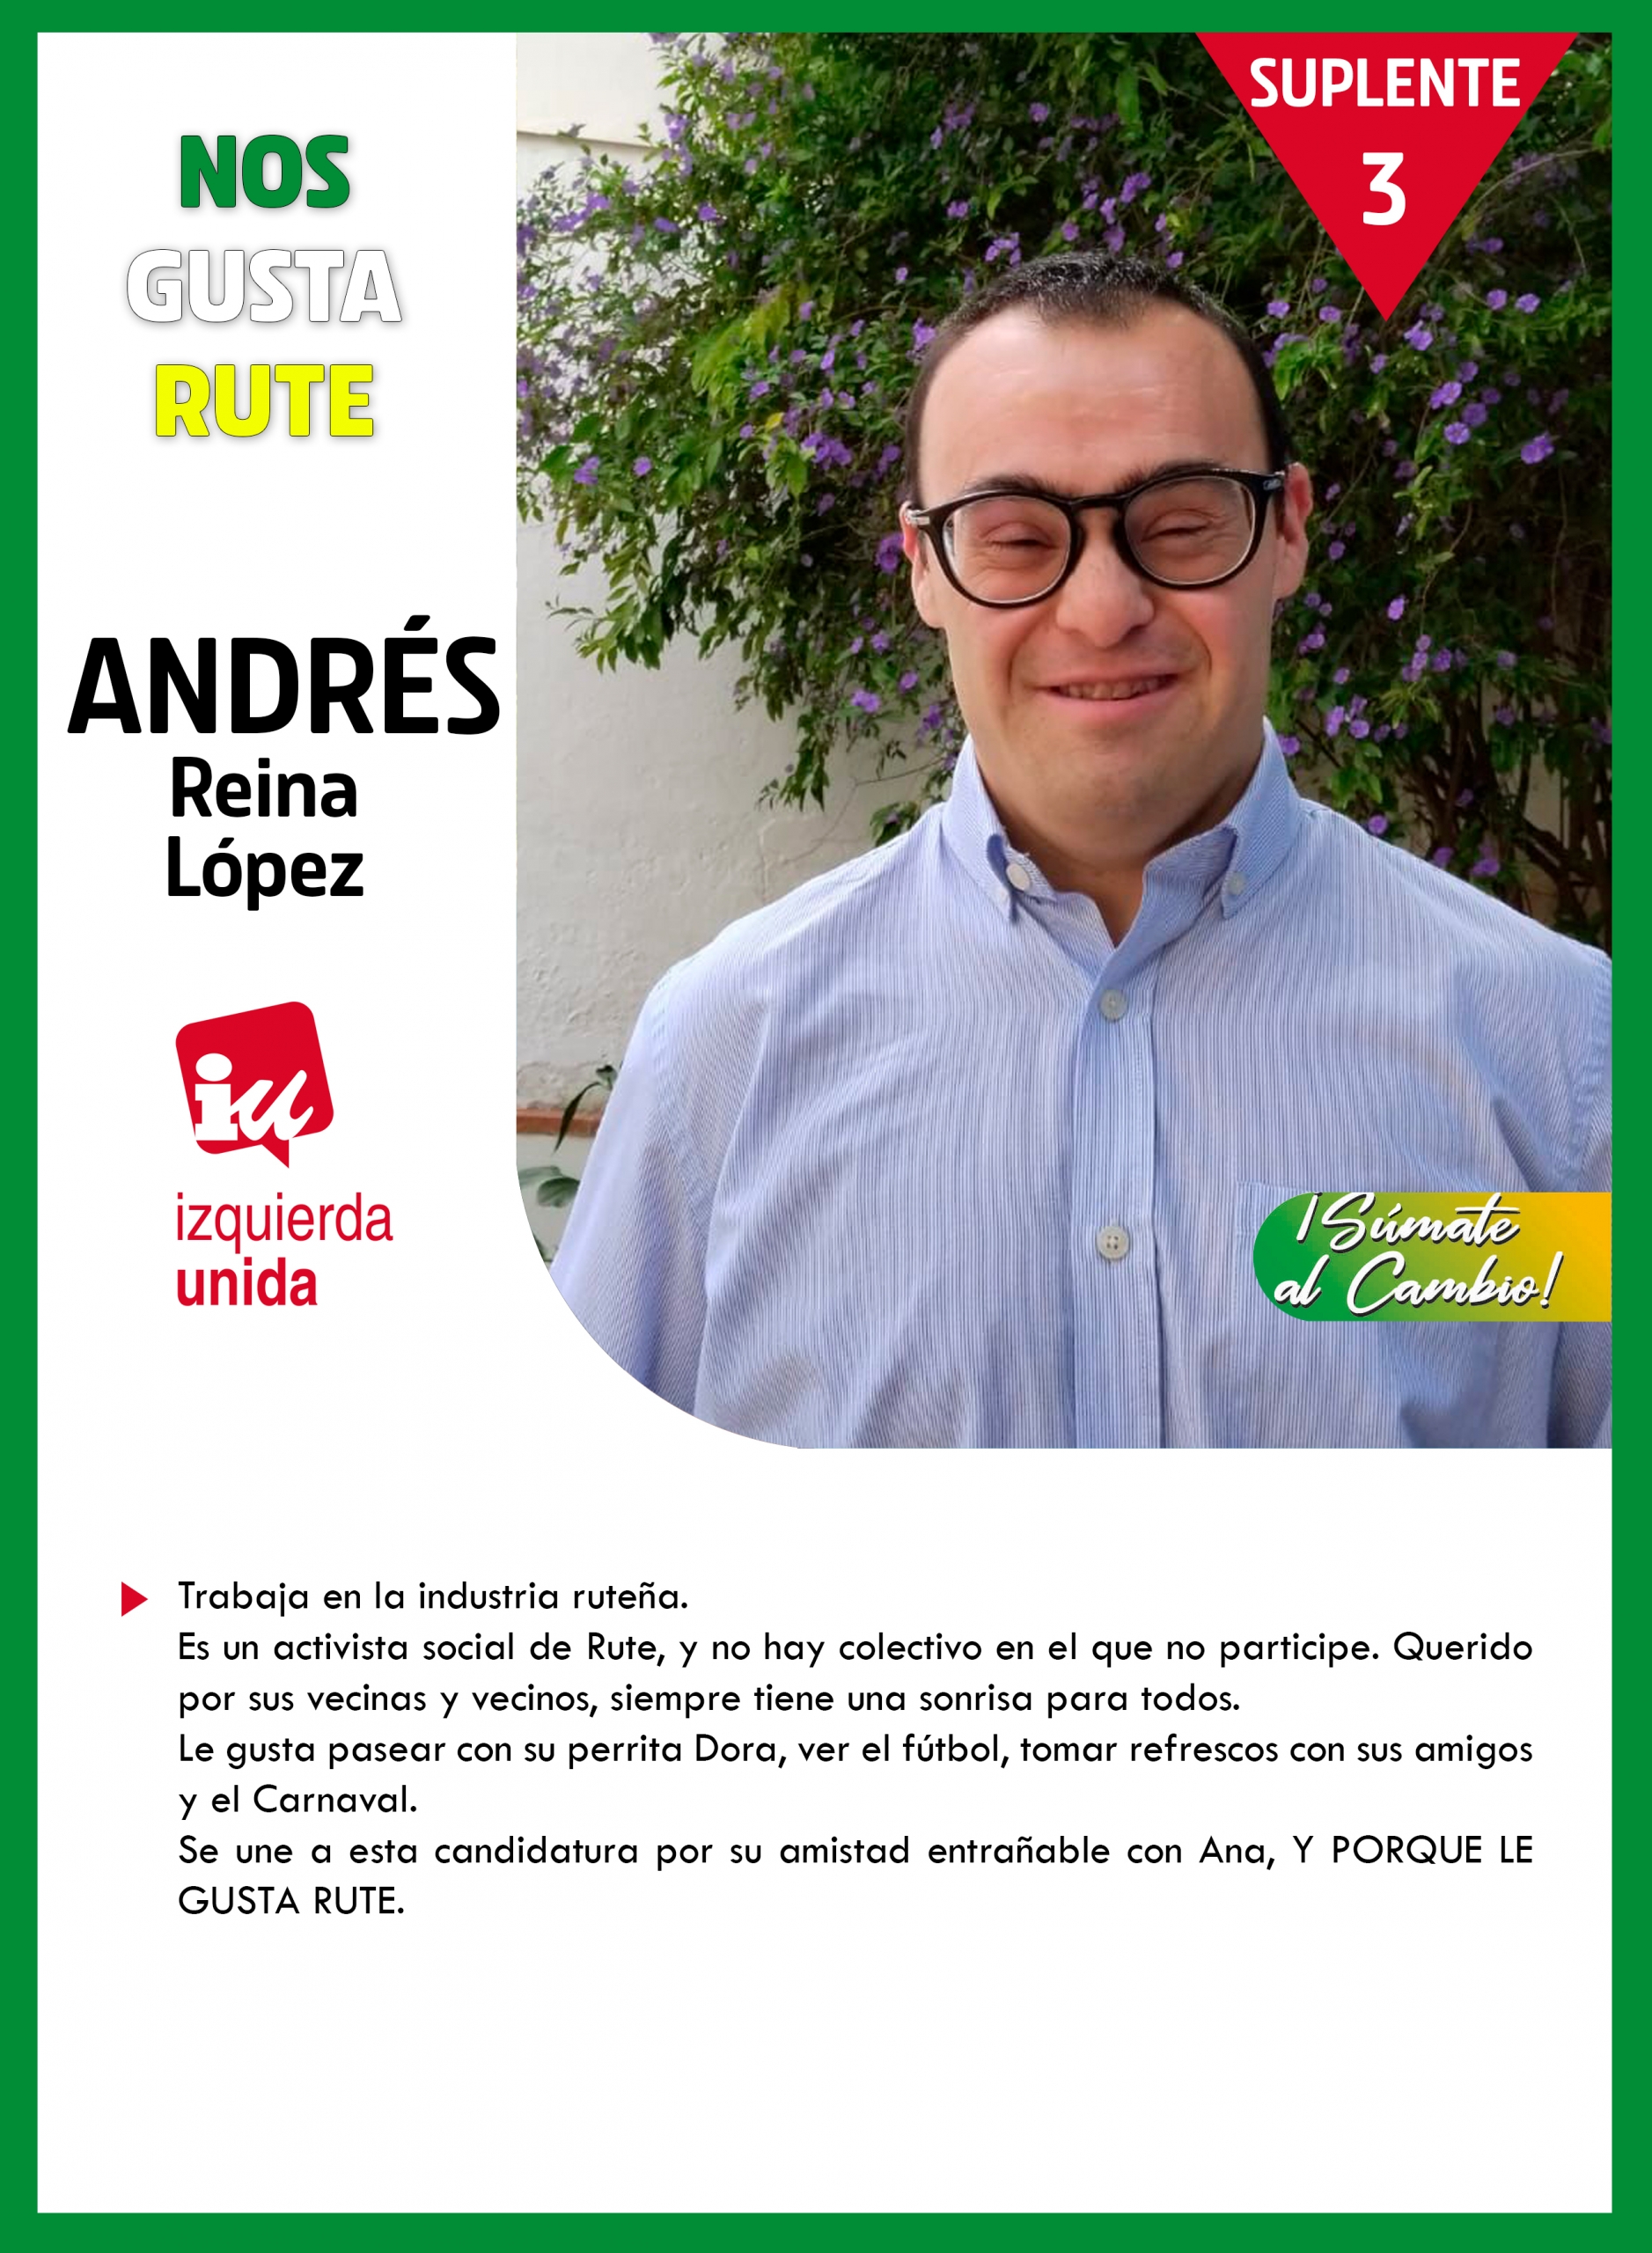 Andrés Reina López